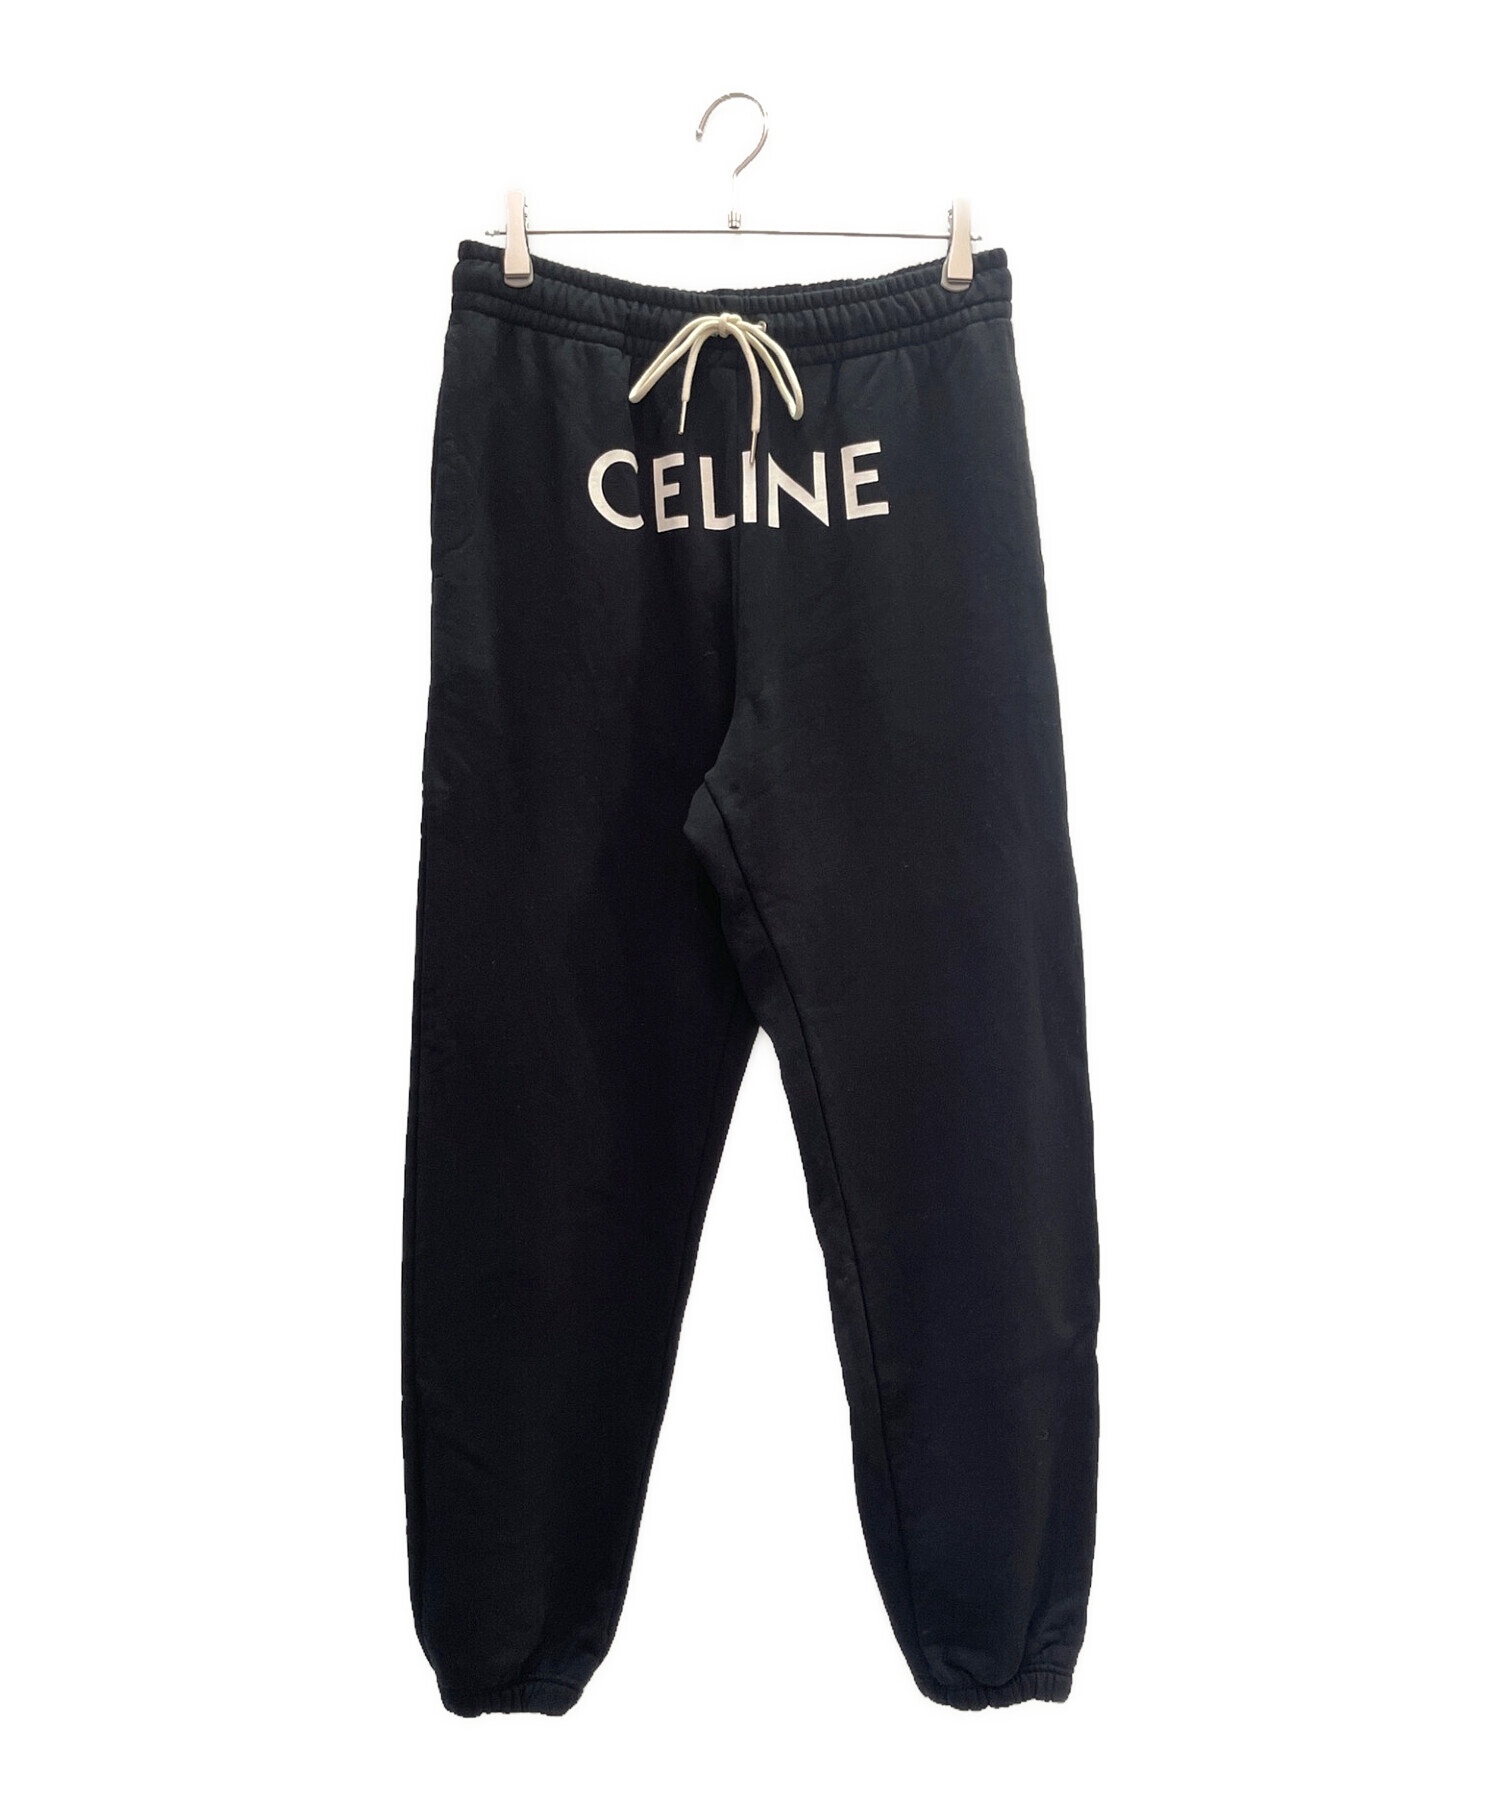 約38cm☆Celine セリーヌ ブラック パンツ